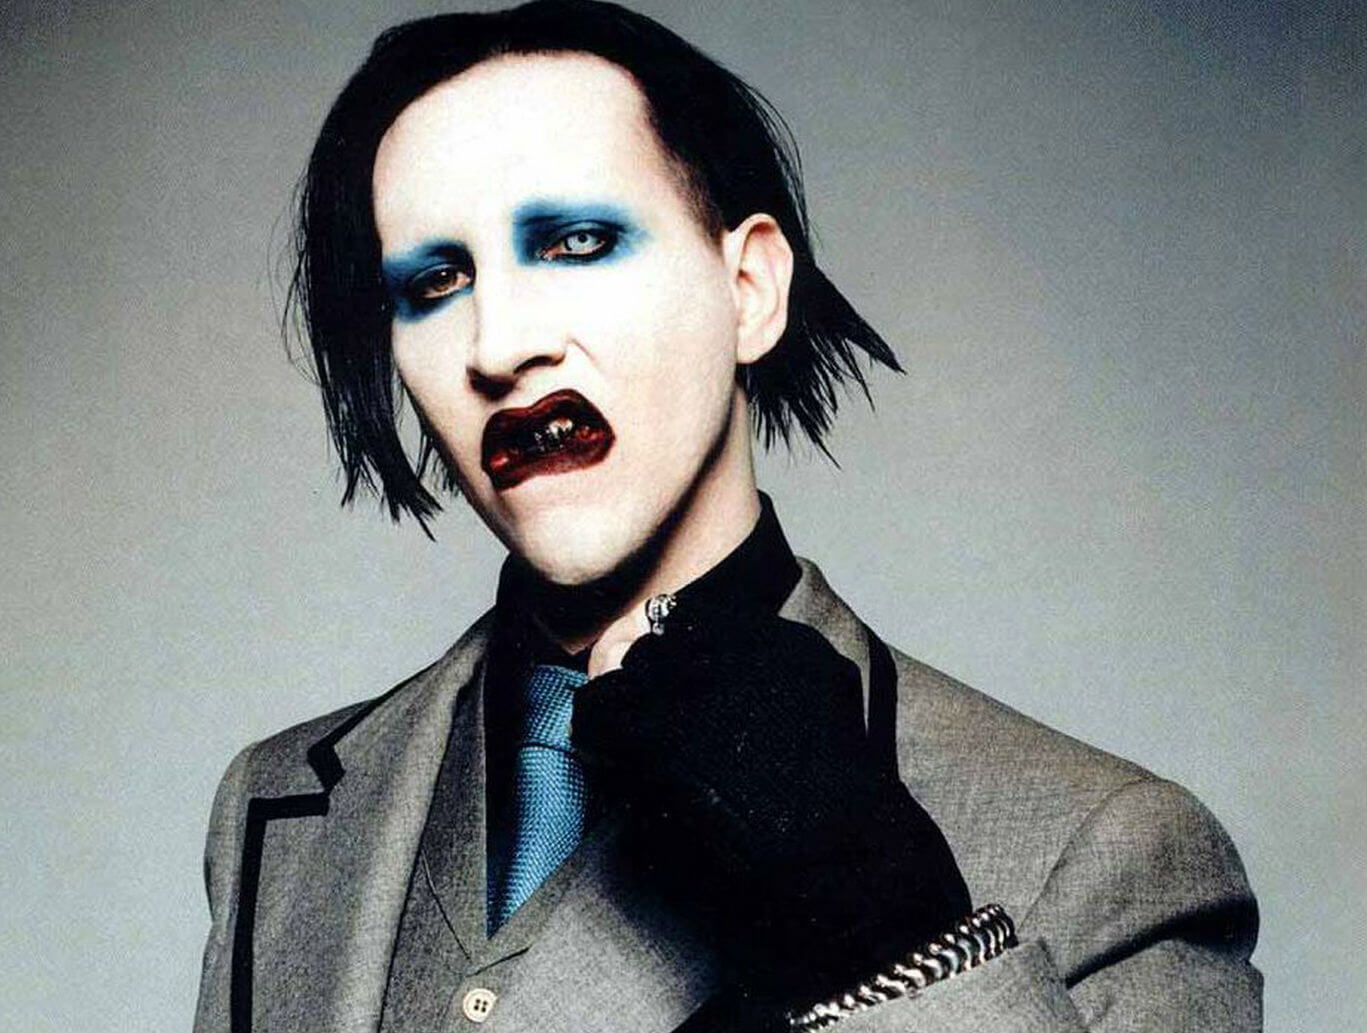 Marilyn Manson ospite di Music, l'esorcista: "Boicottatelo" - marilyn manson 3 - Gay.it